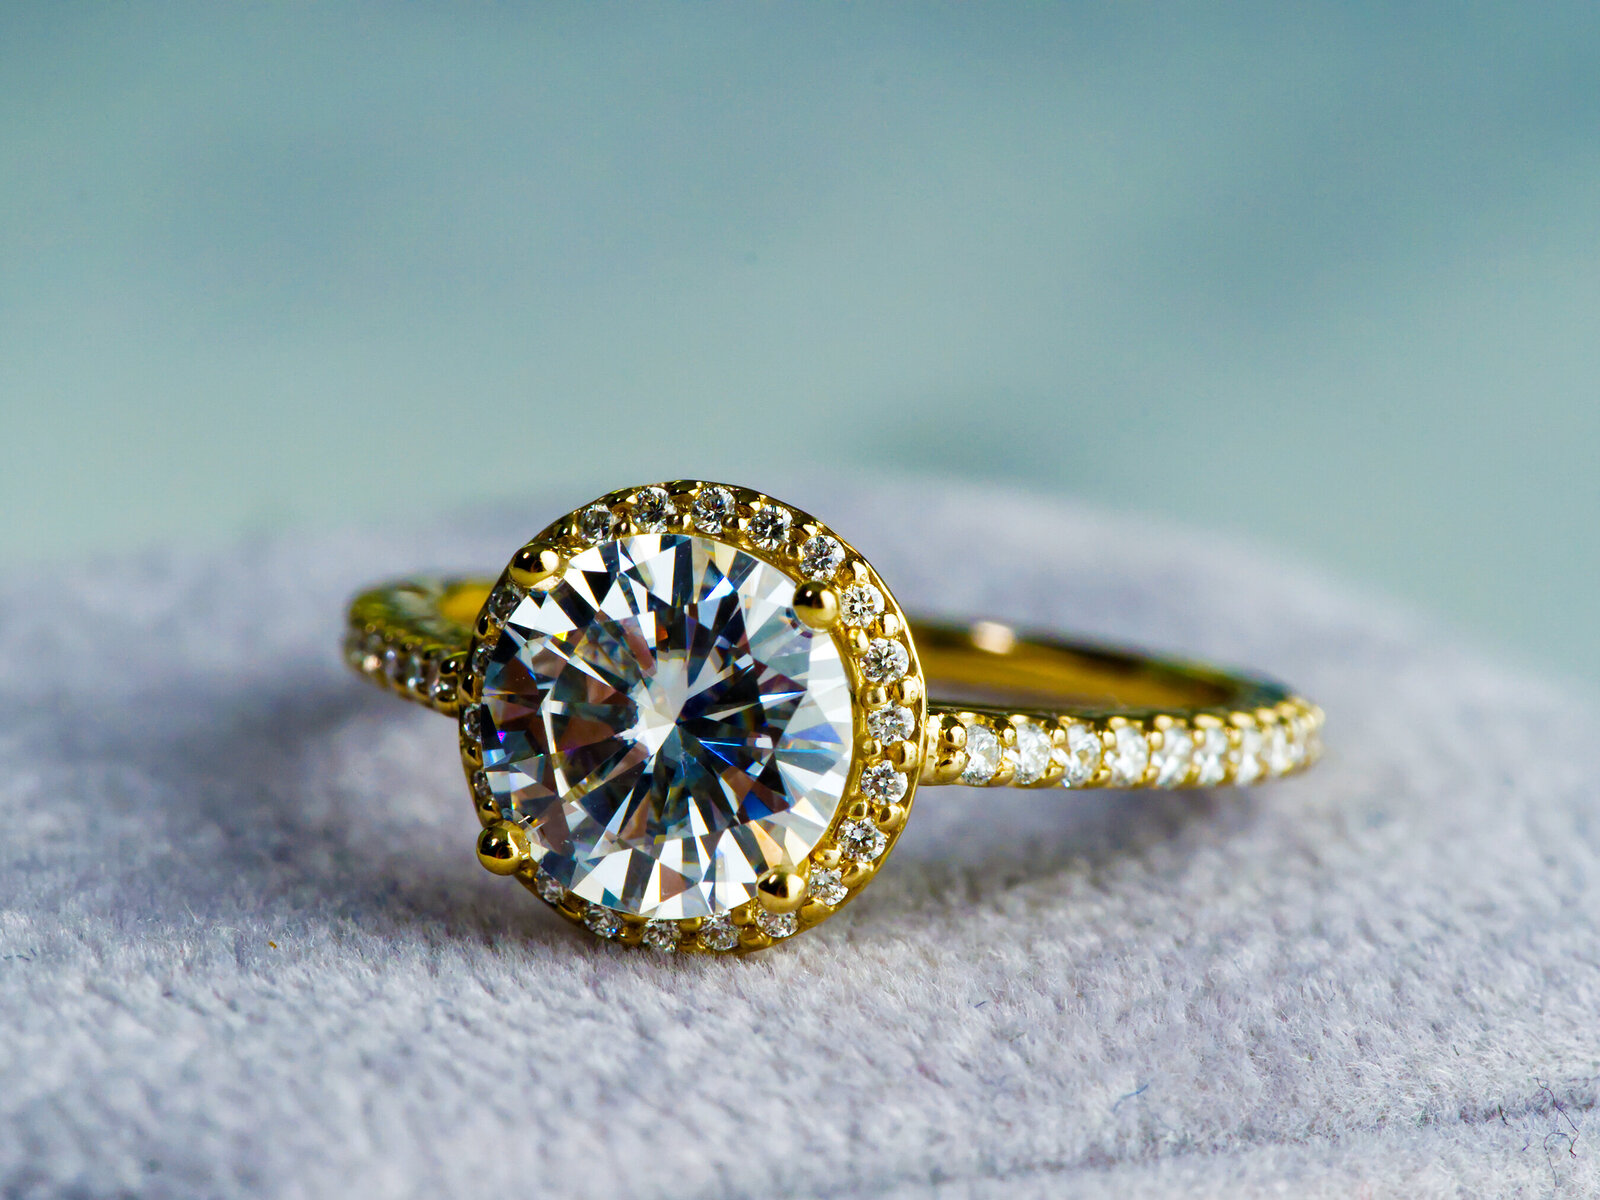 1.5 carat wedding ring